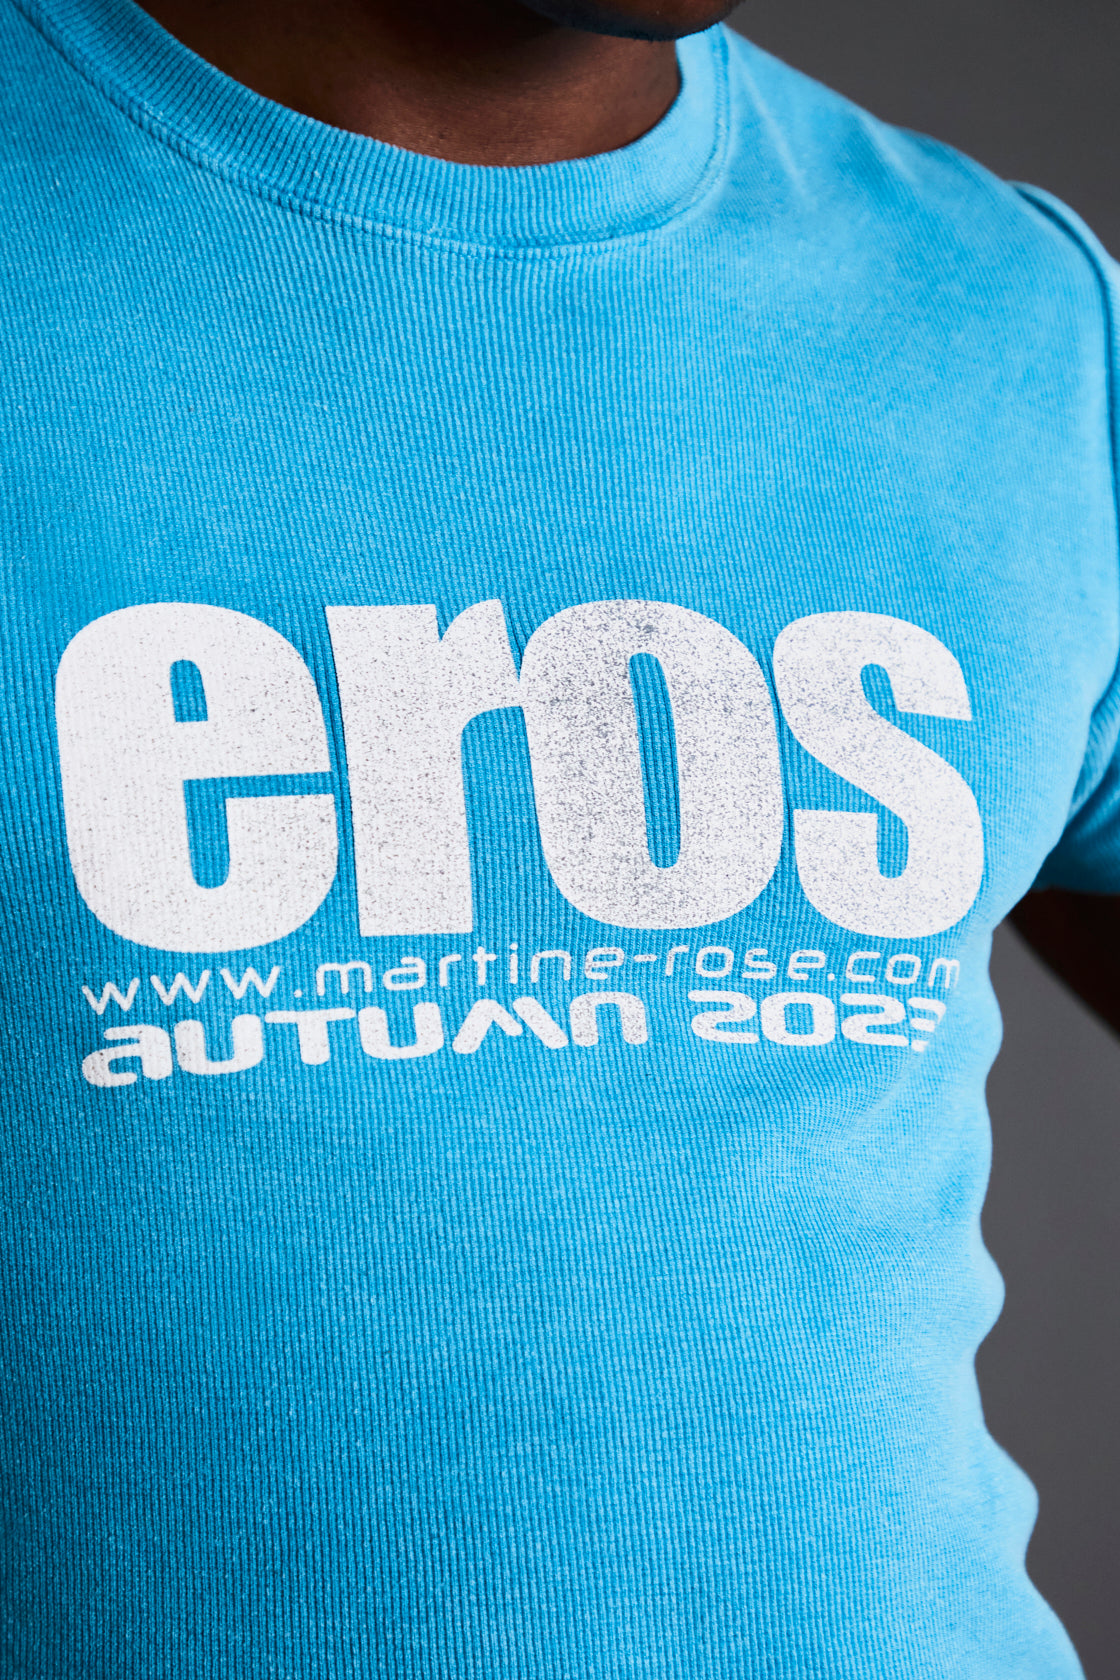 Martine Rose Outlet: t-shirt for man - Black  Martine Rose t-shirt  CMR603JC online at